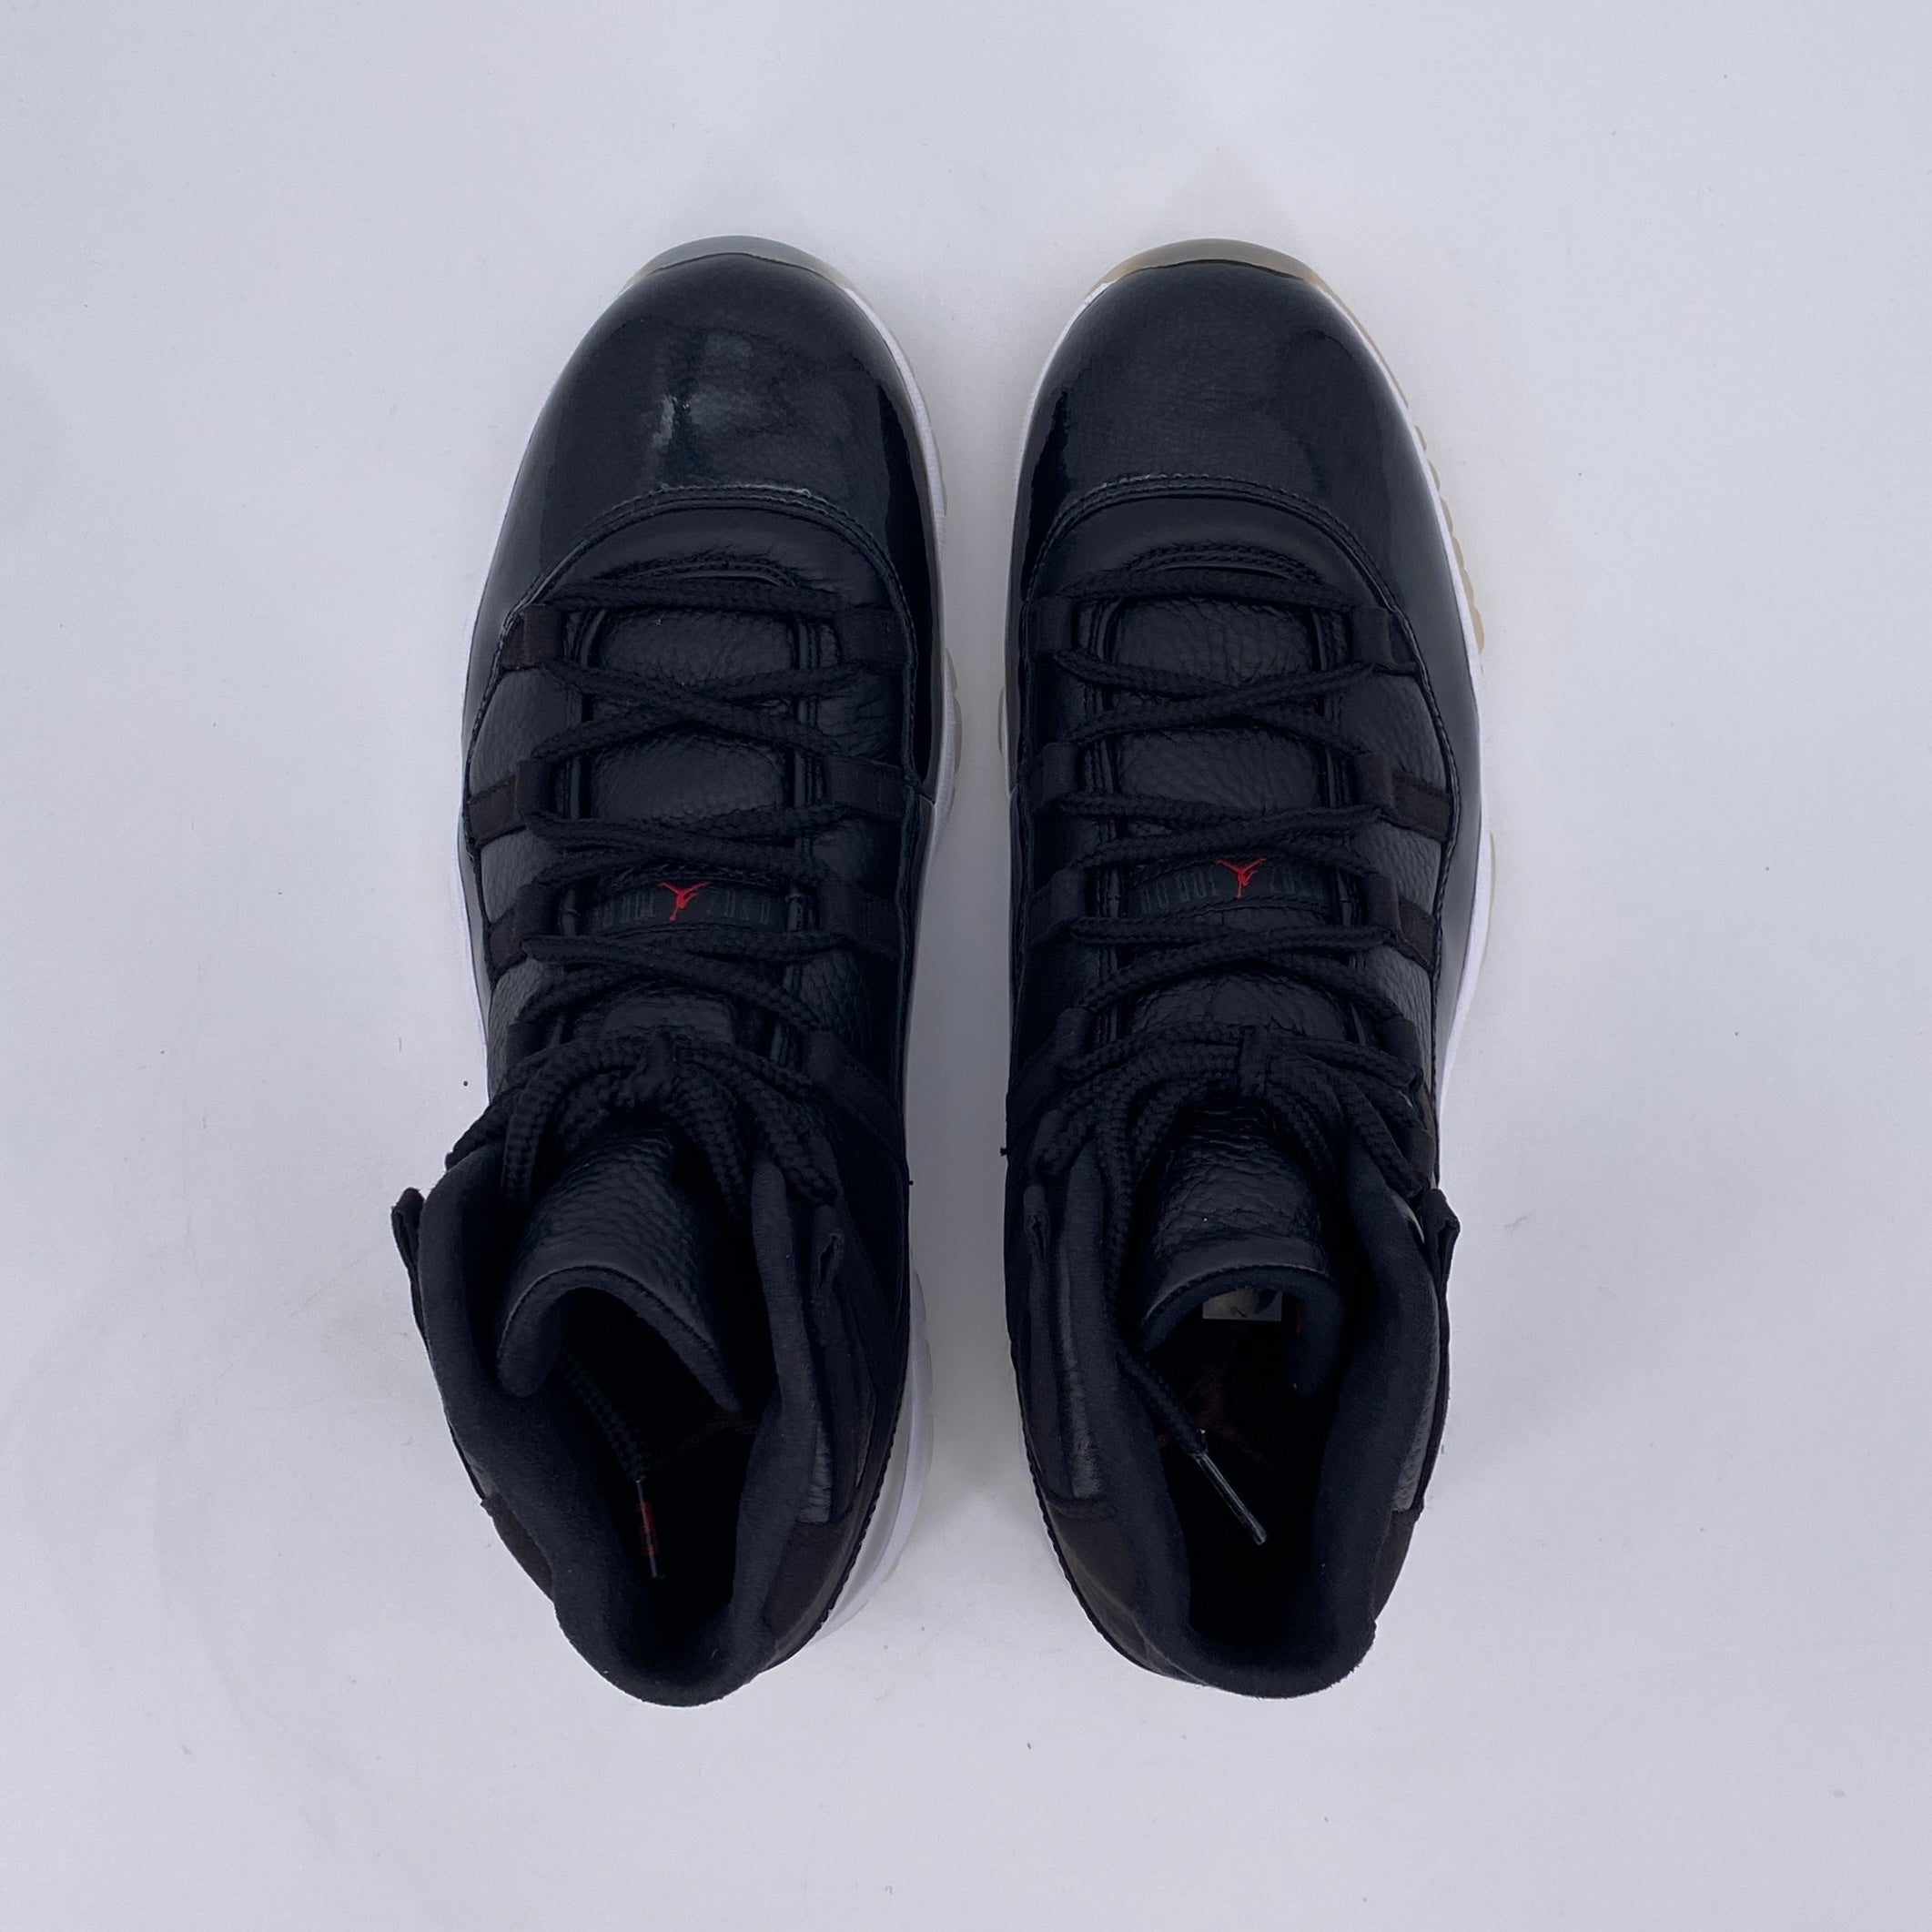 Air Jordan 11 Retro "72-10" 2015 New Size 12